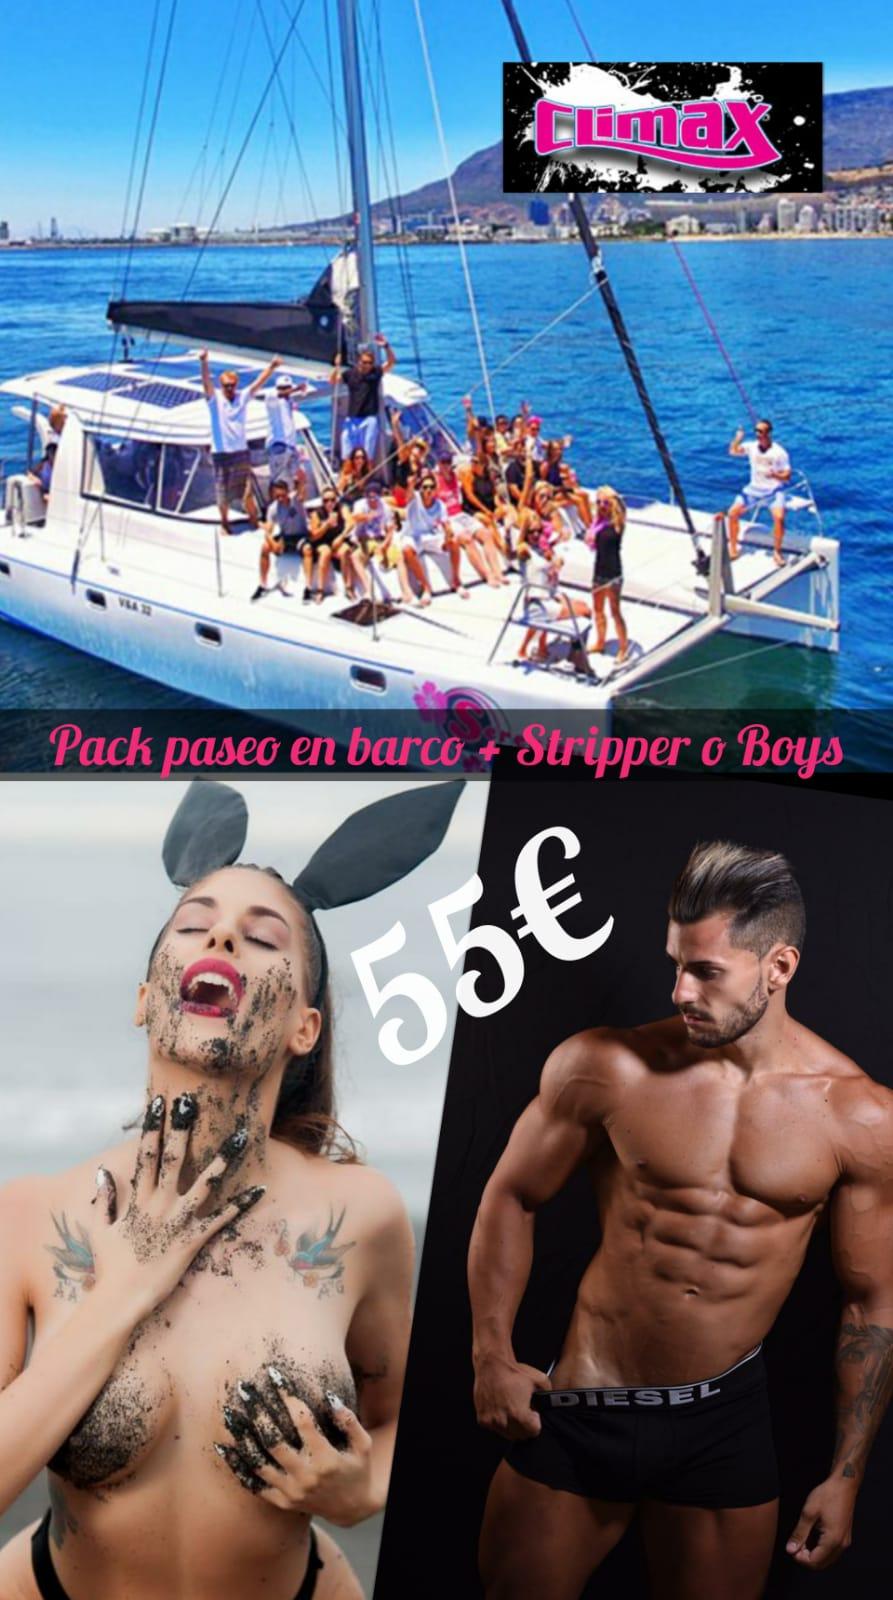 Pack paseo en barco + Stripper o Boy